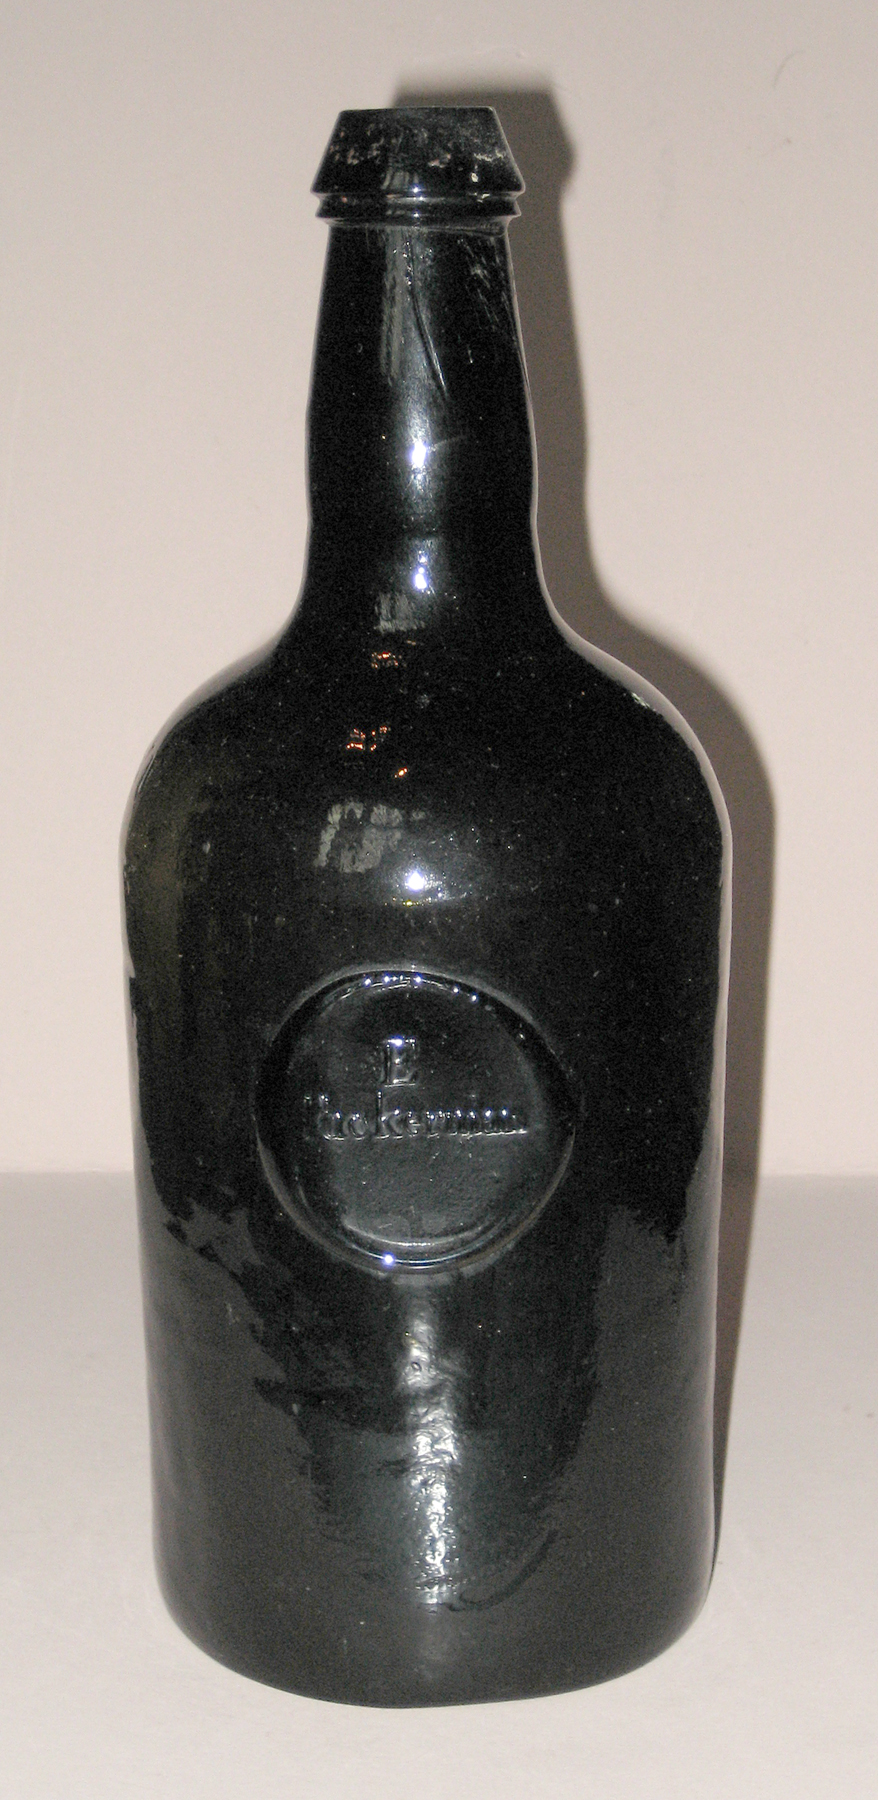 Bottle - Wine bottle